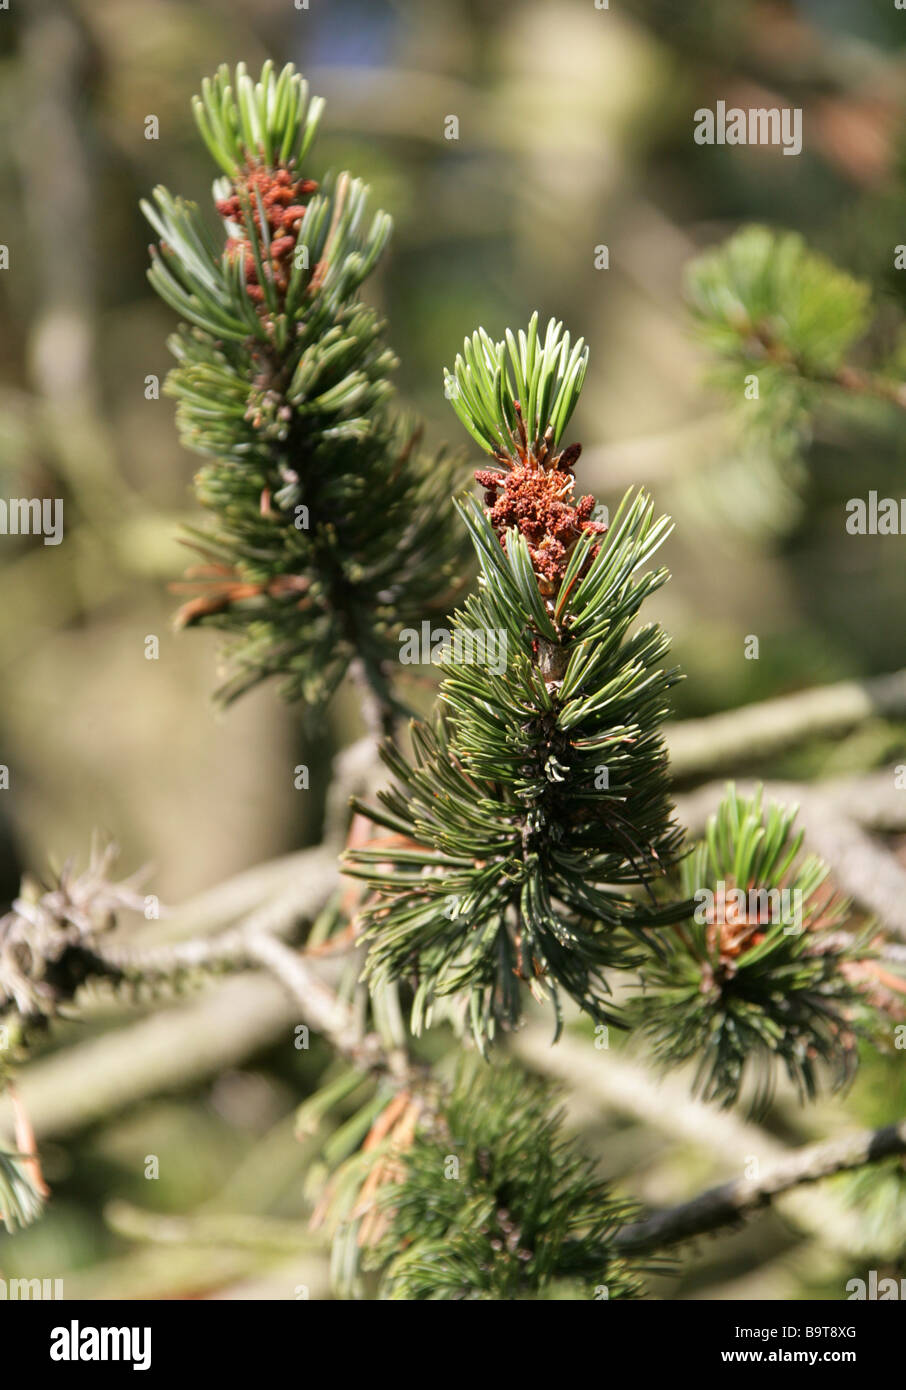 Cono de púas de pino, Pinus aristata, Pinaceae, al suroeste de EE.UU. Foto de stock